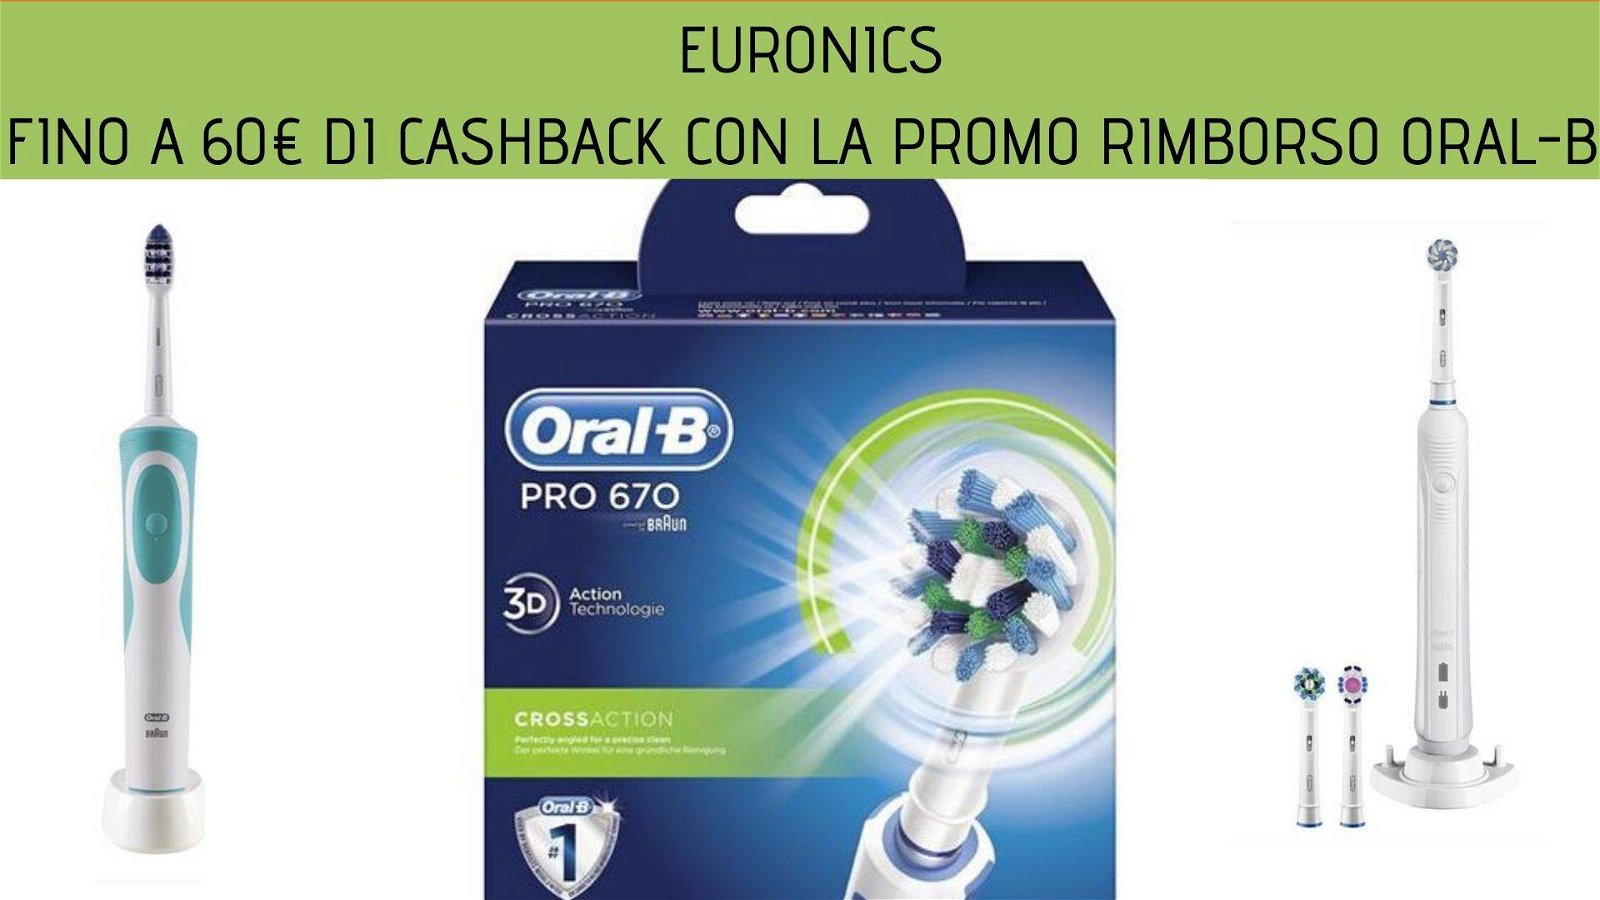 Immagine di Fino a 60€ di cashback con la promo rimborso Oral-B di Euronics!